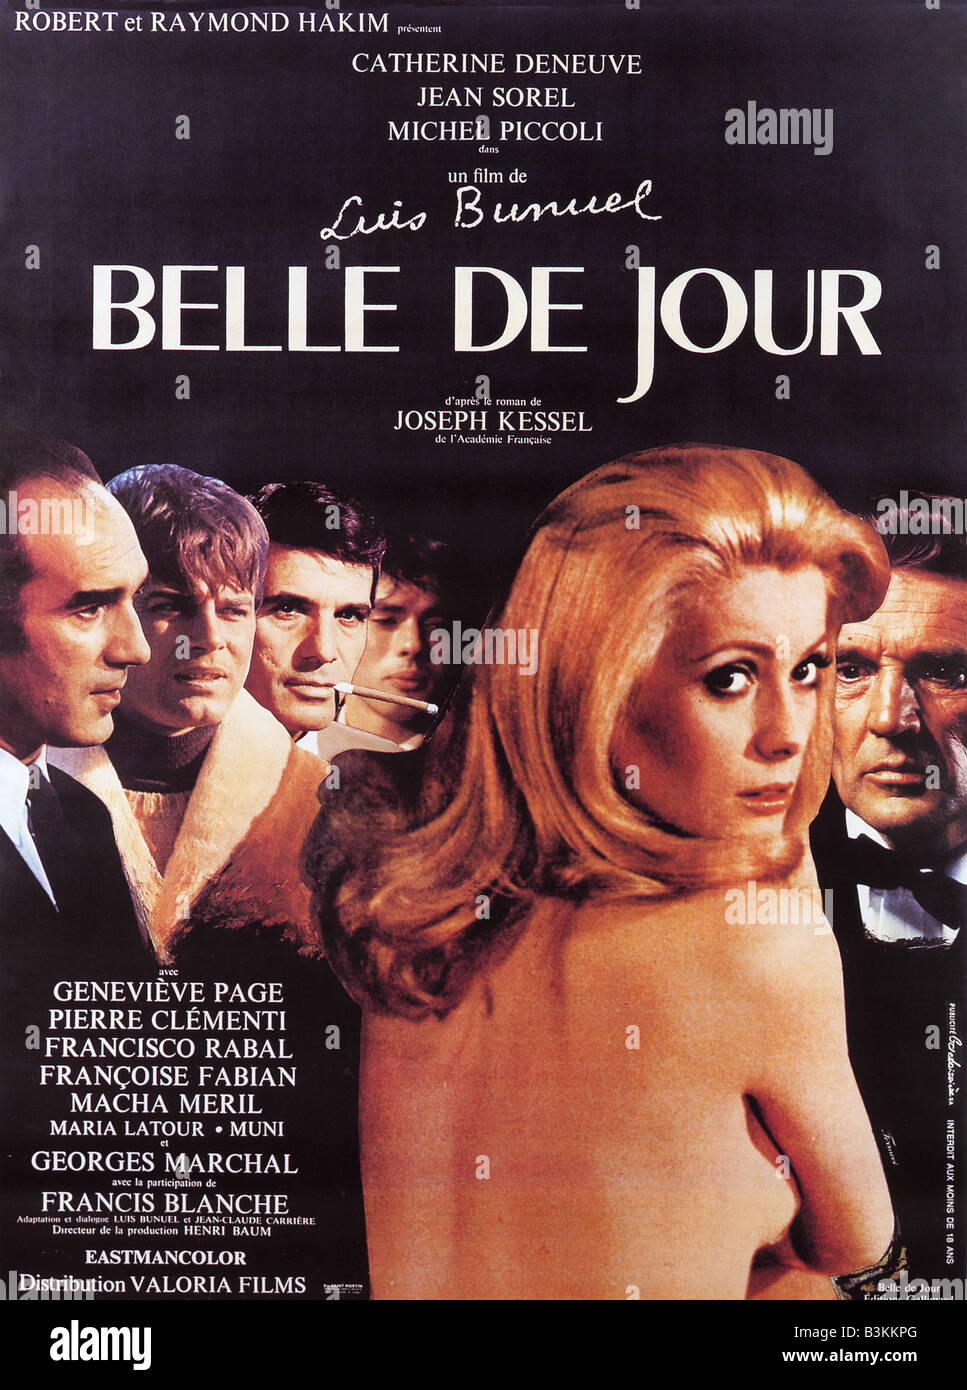 BELLE DE JOUR Poster per 1967 Parigi film/film Cinque produzione con Catherine Deneuve Foto Stock